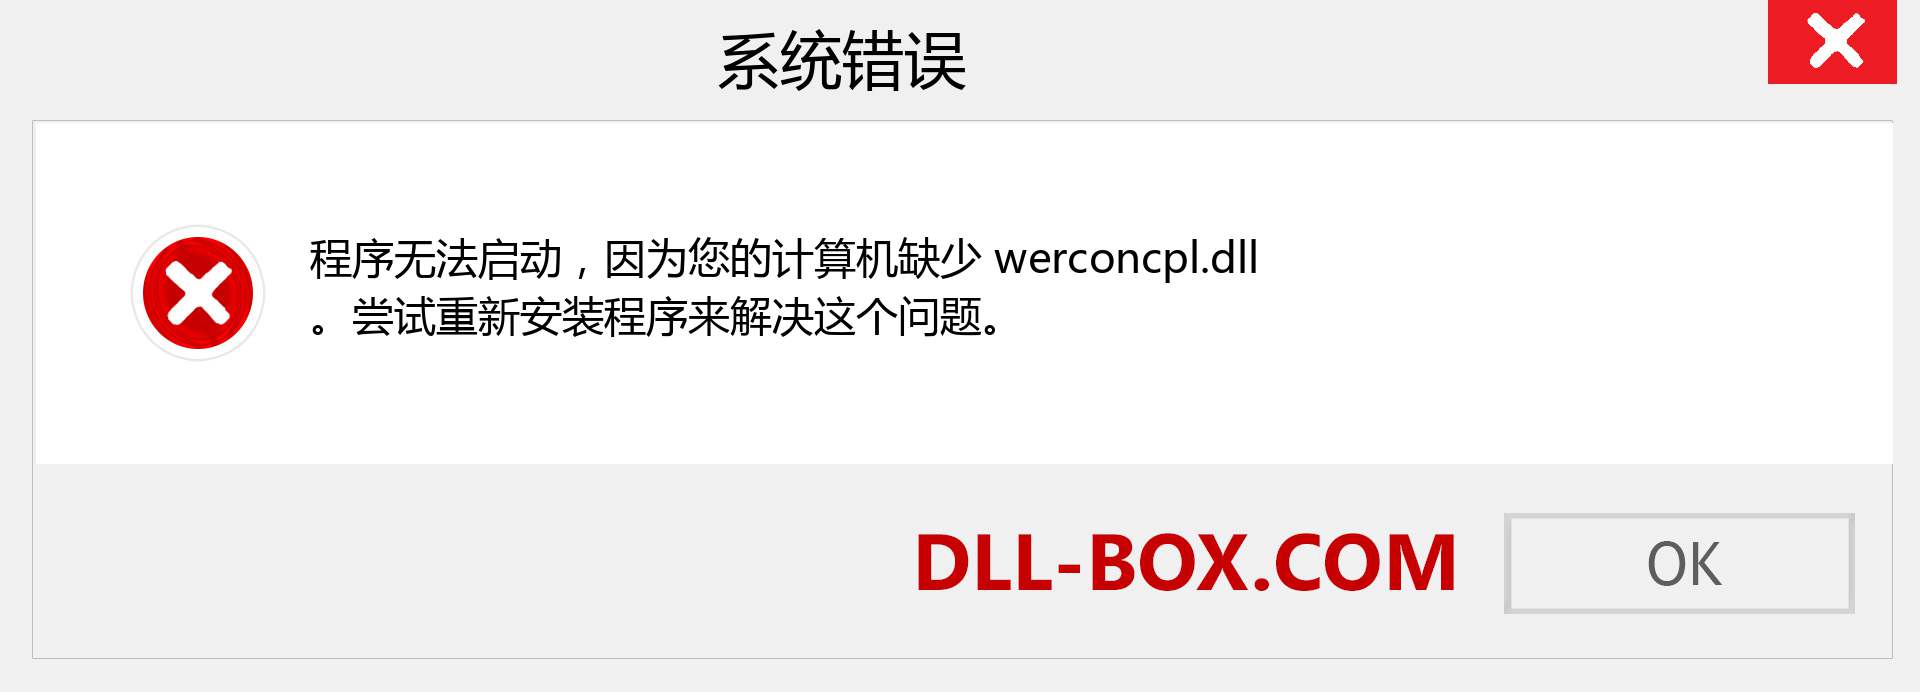 werconcpl.dll 文件丢失？。 适用于 Windows 7、8、10 的下载 - 修复 Windows、照片、图像上的 werconcpl dll 丢失错误